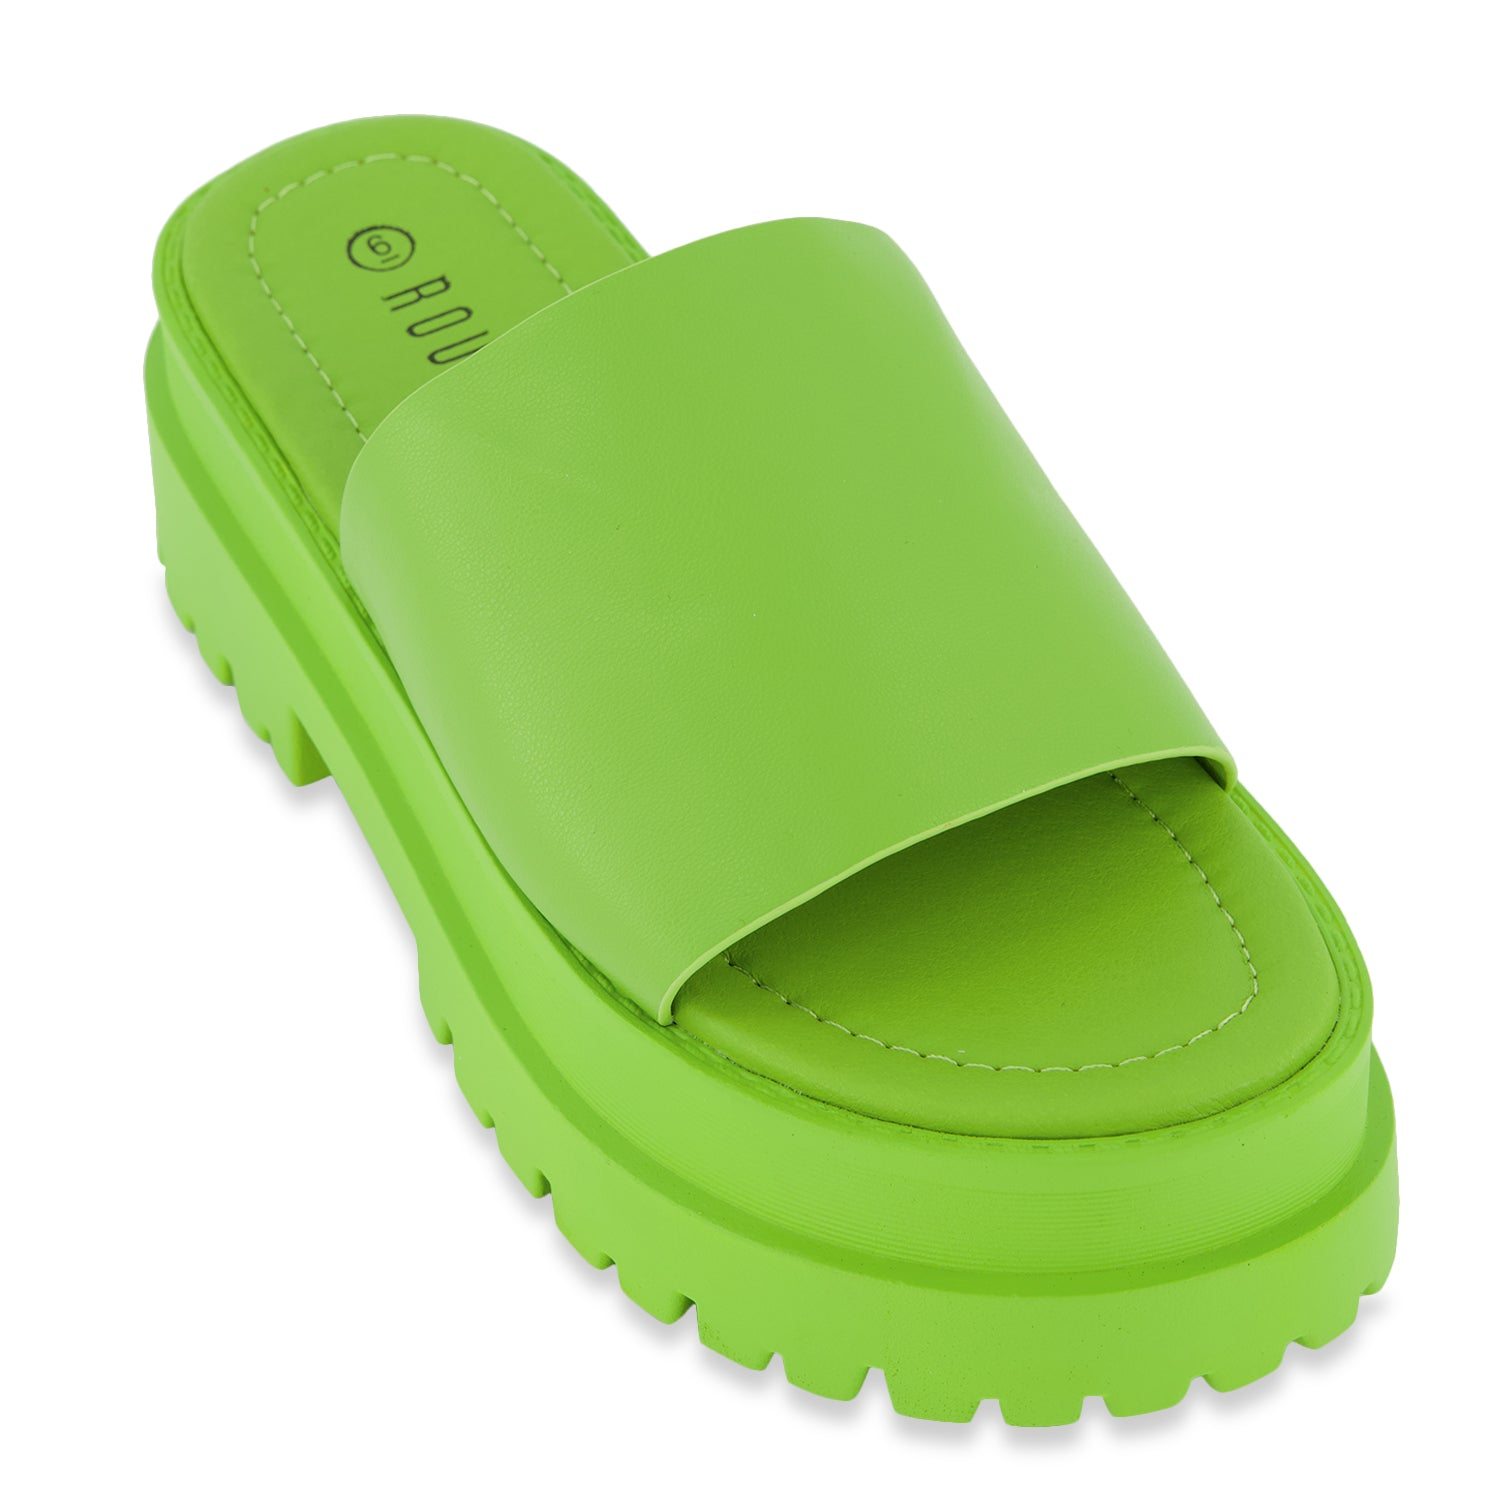 Lug Sole Platform Slide Sandals